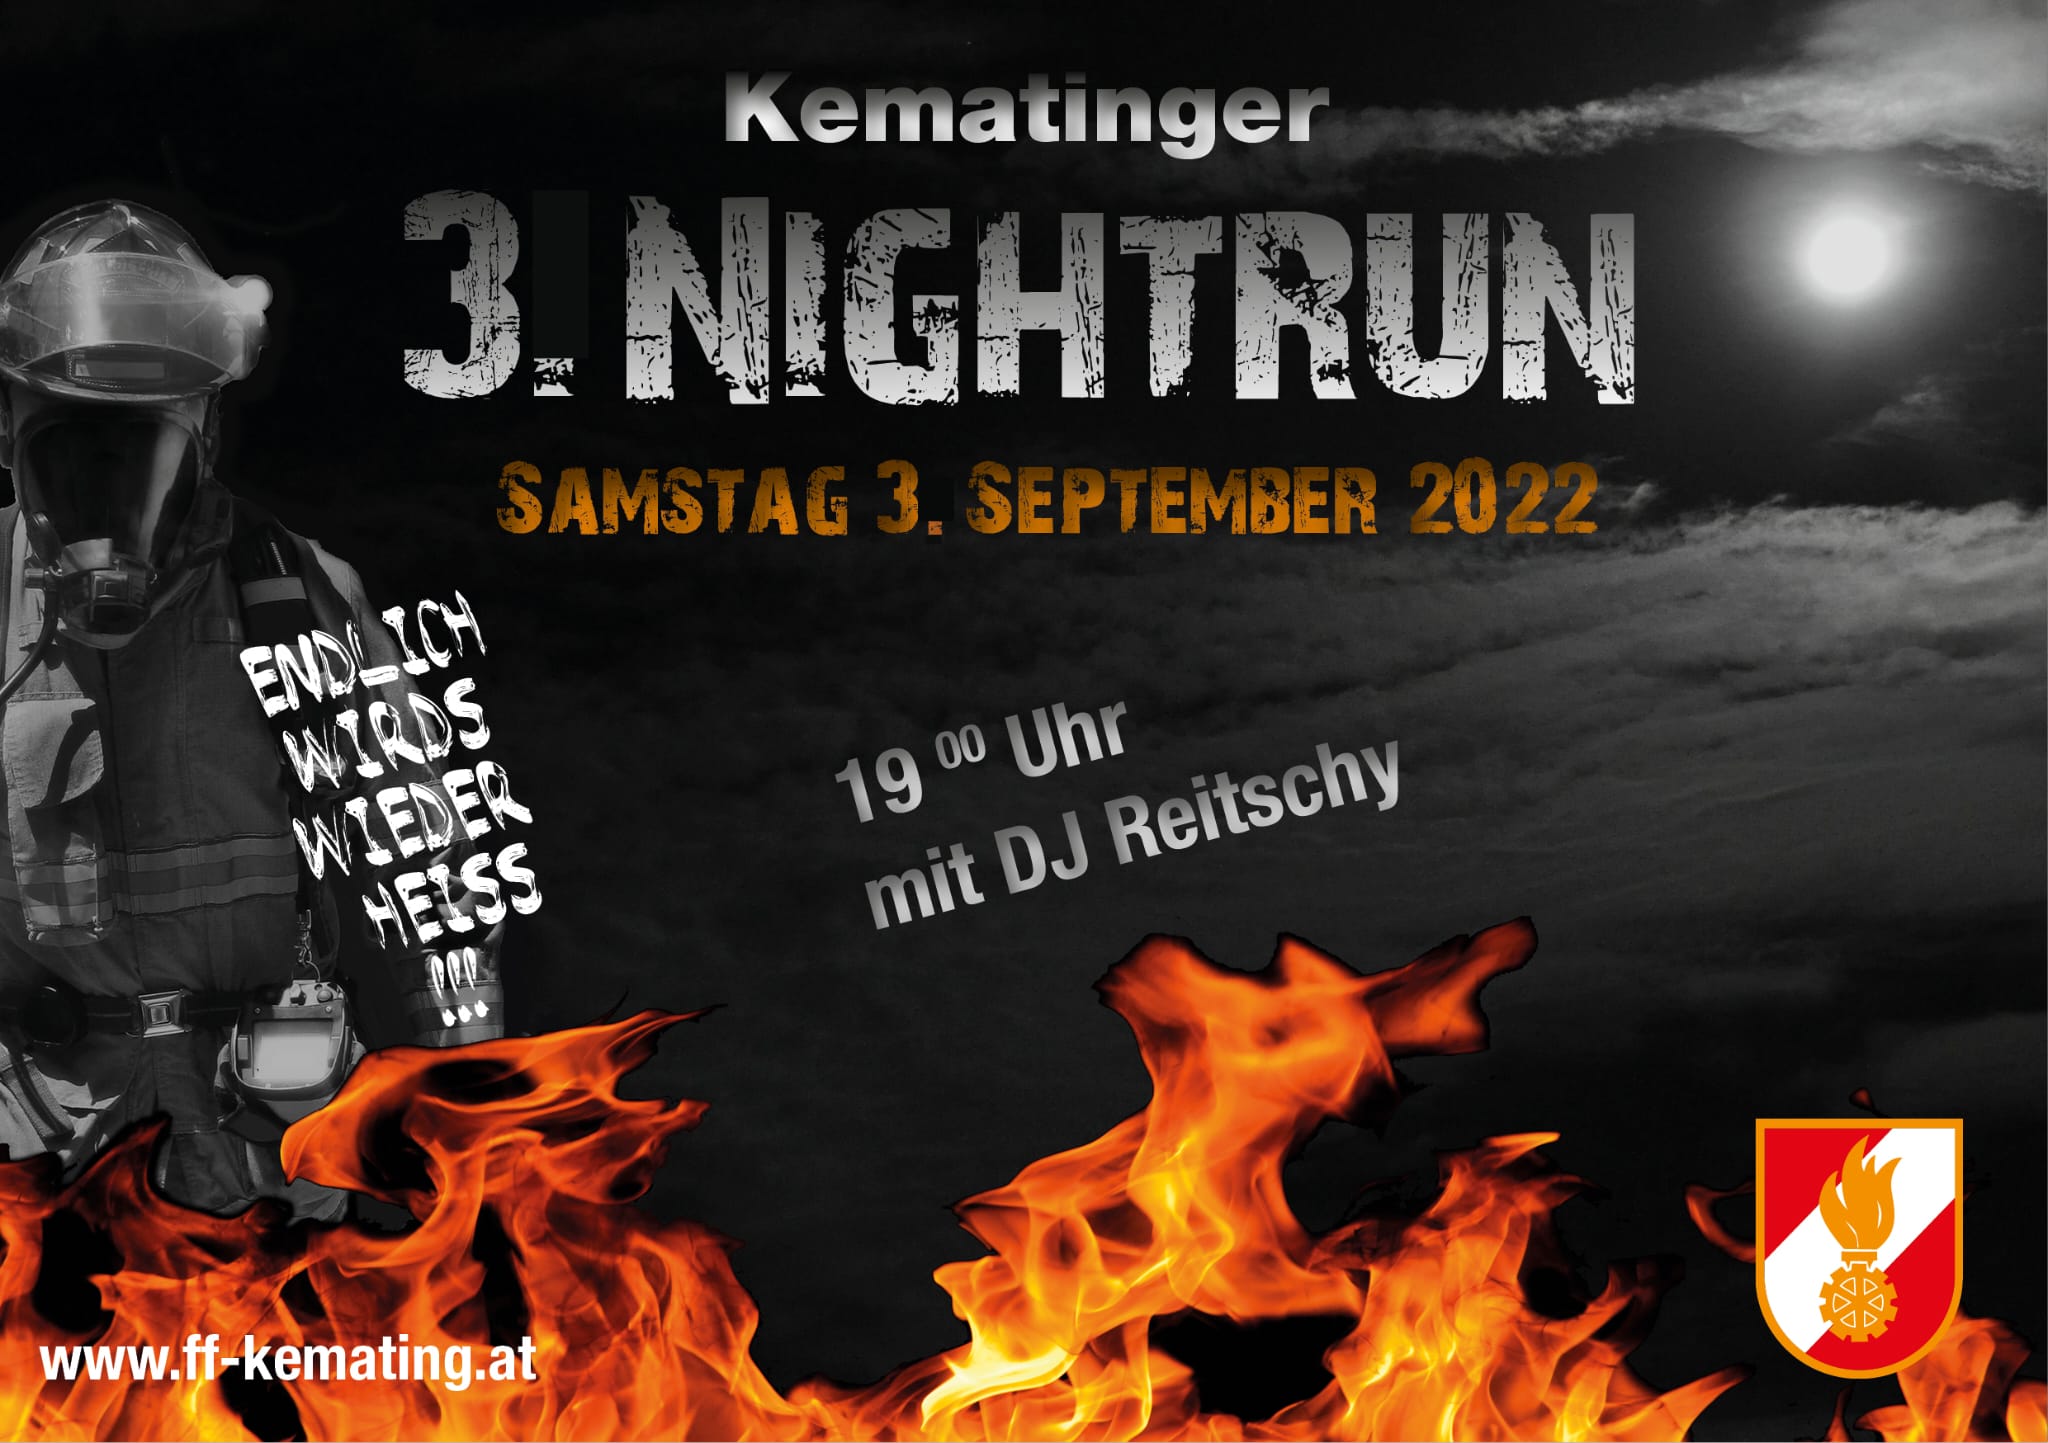 Kematinger Nightrun 2022 - der Countdown läuft